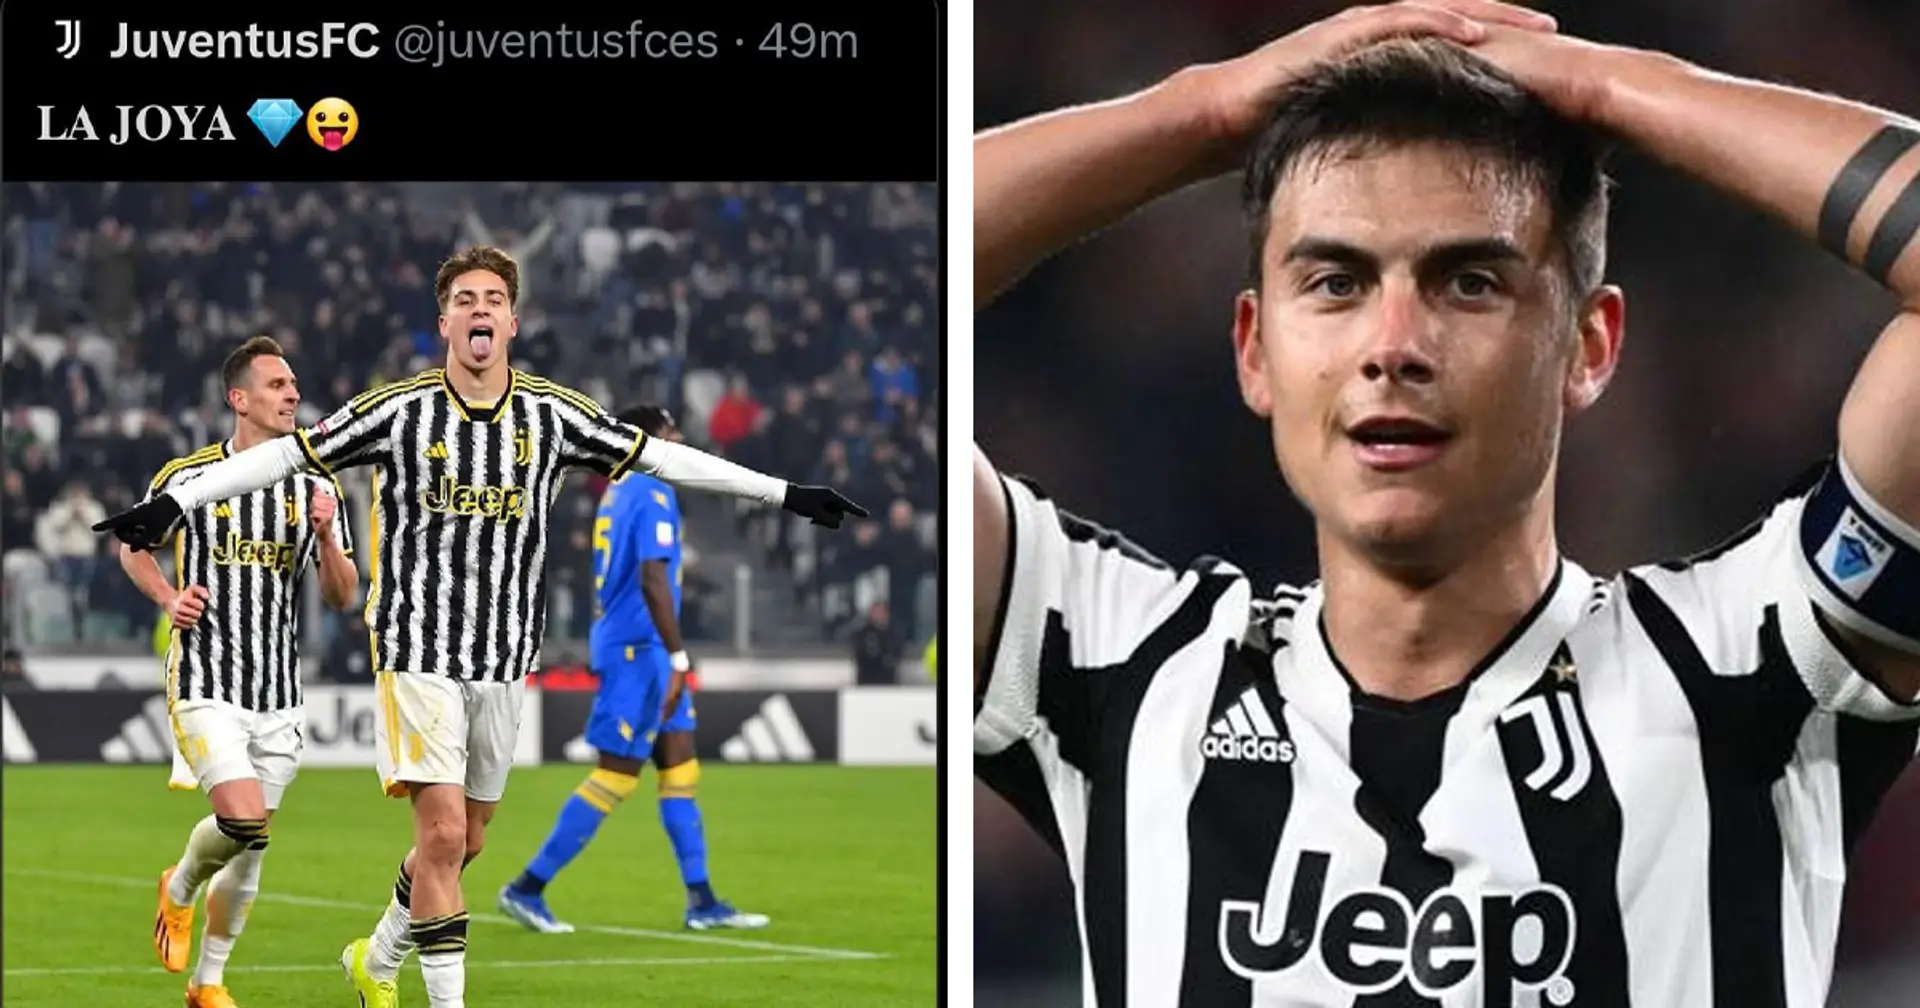 Yildiz diventa "La Joya" per una notte ma è rabbia tra i tifosi: la Juventus fa dietrofront sui social